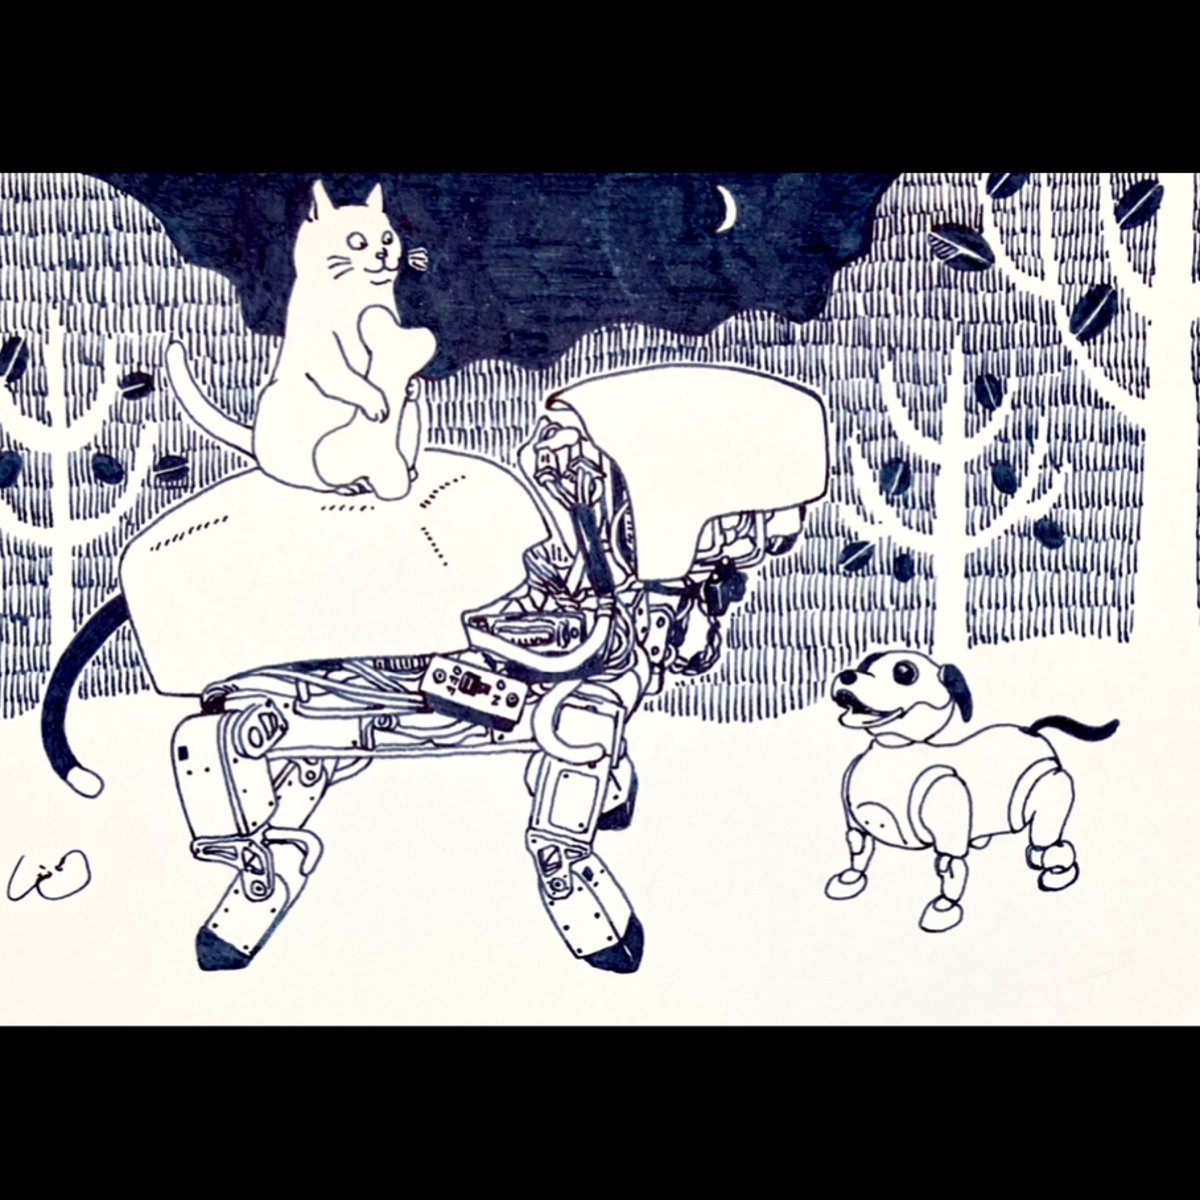 #aibo 会う 森の散歩  #InkDrawing #ペン画 #絵 #イラスト  4/28-30猫画個展@神田